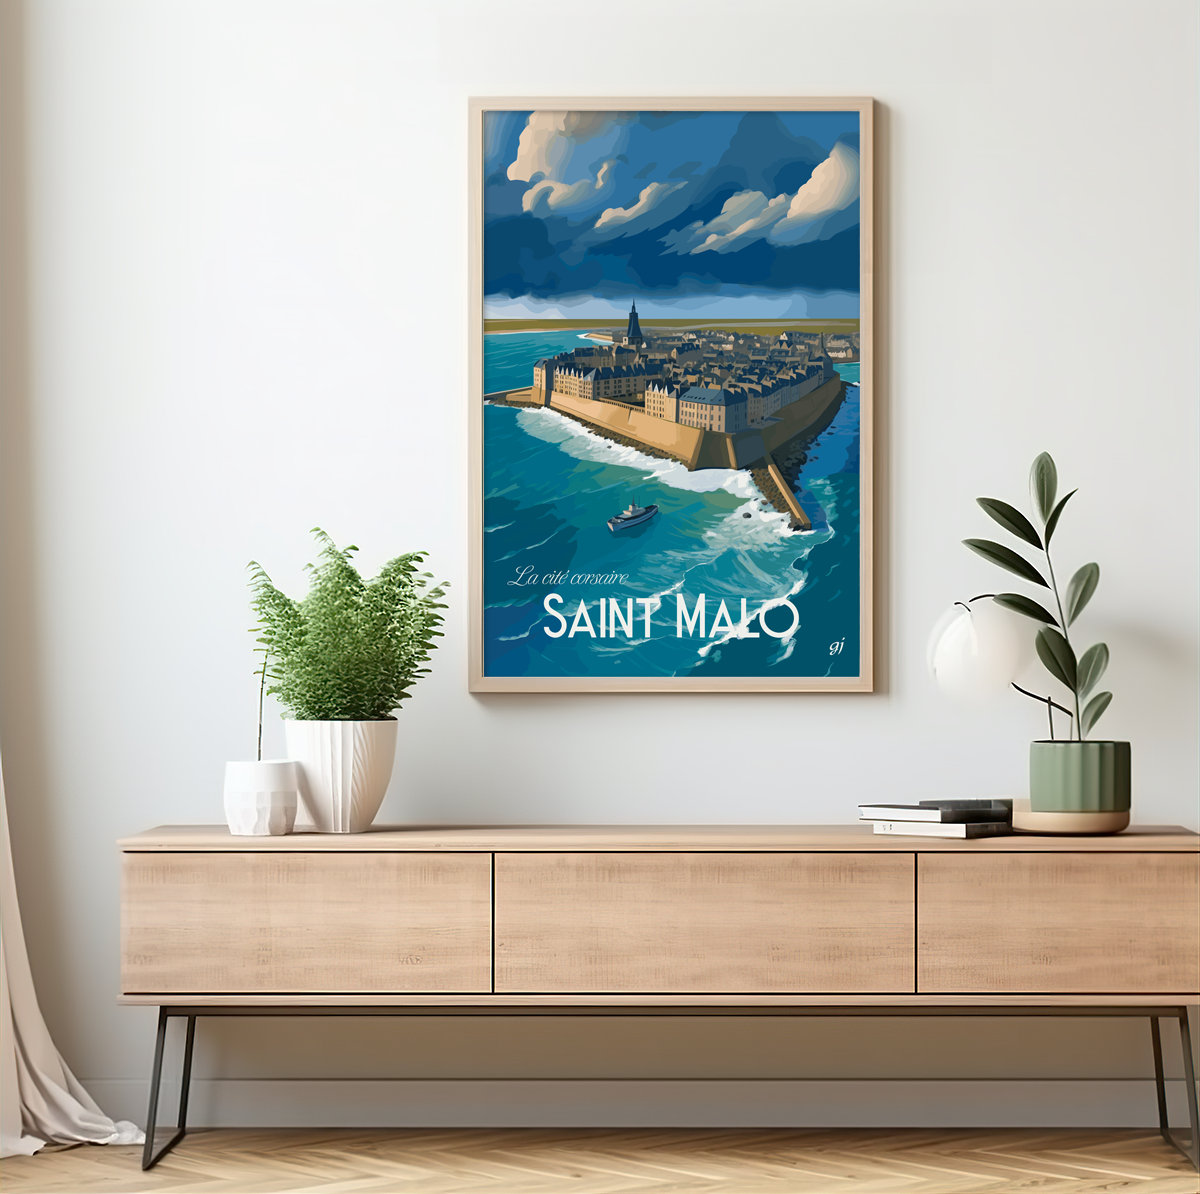 Saint-Malo poster by bon voyage design